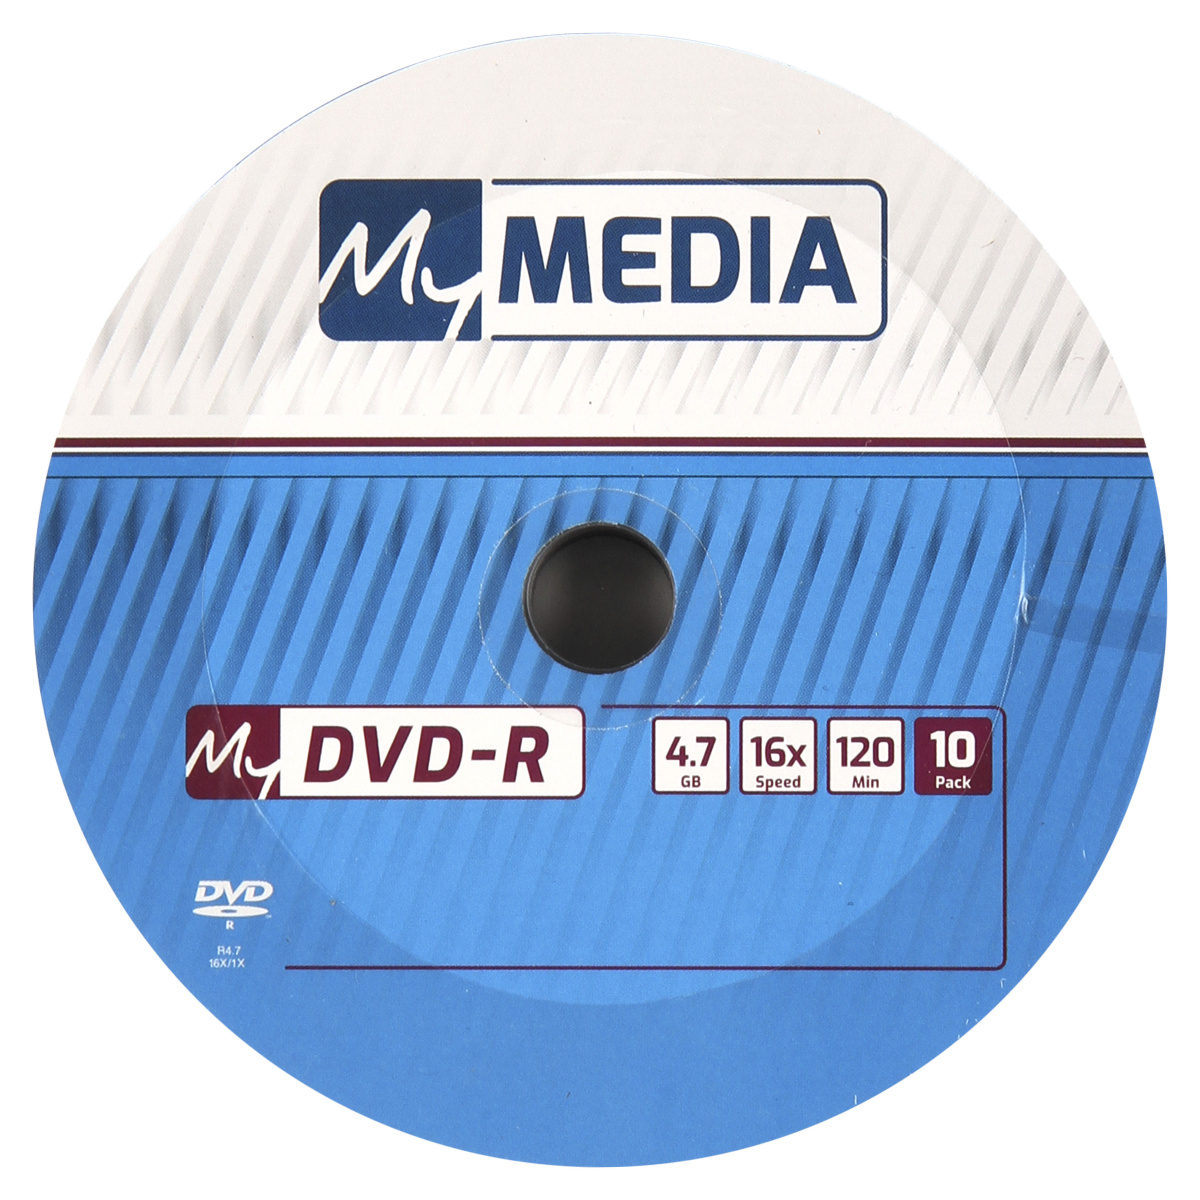 Диск Verbatim DVD-R, 4.7Gb, 16x, на шпинделе, 10 шт, MyMedia (69205) - фото 1